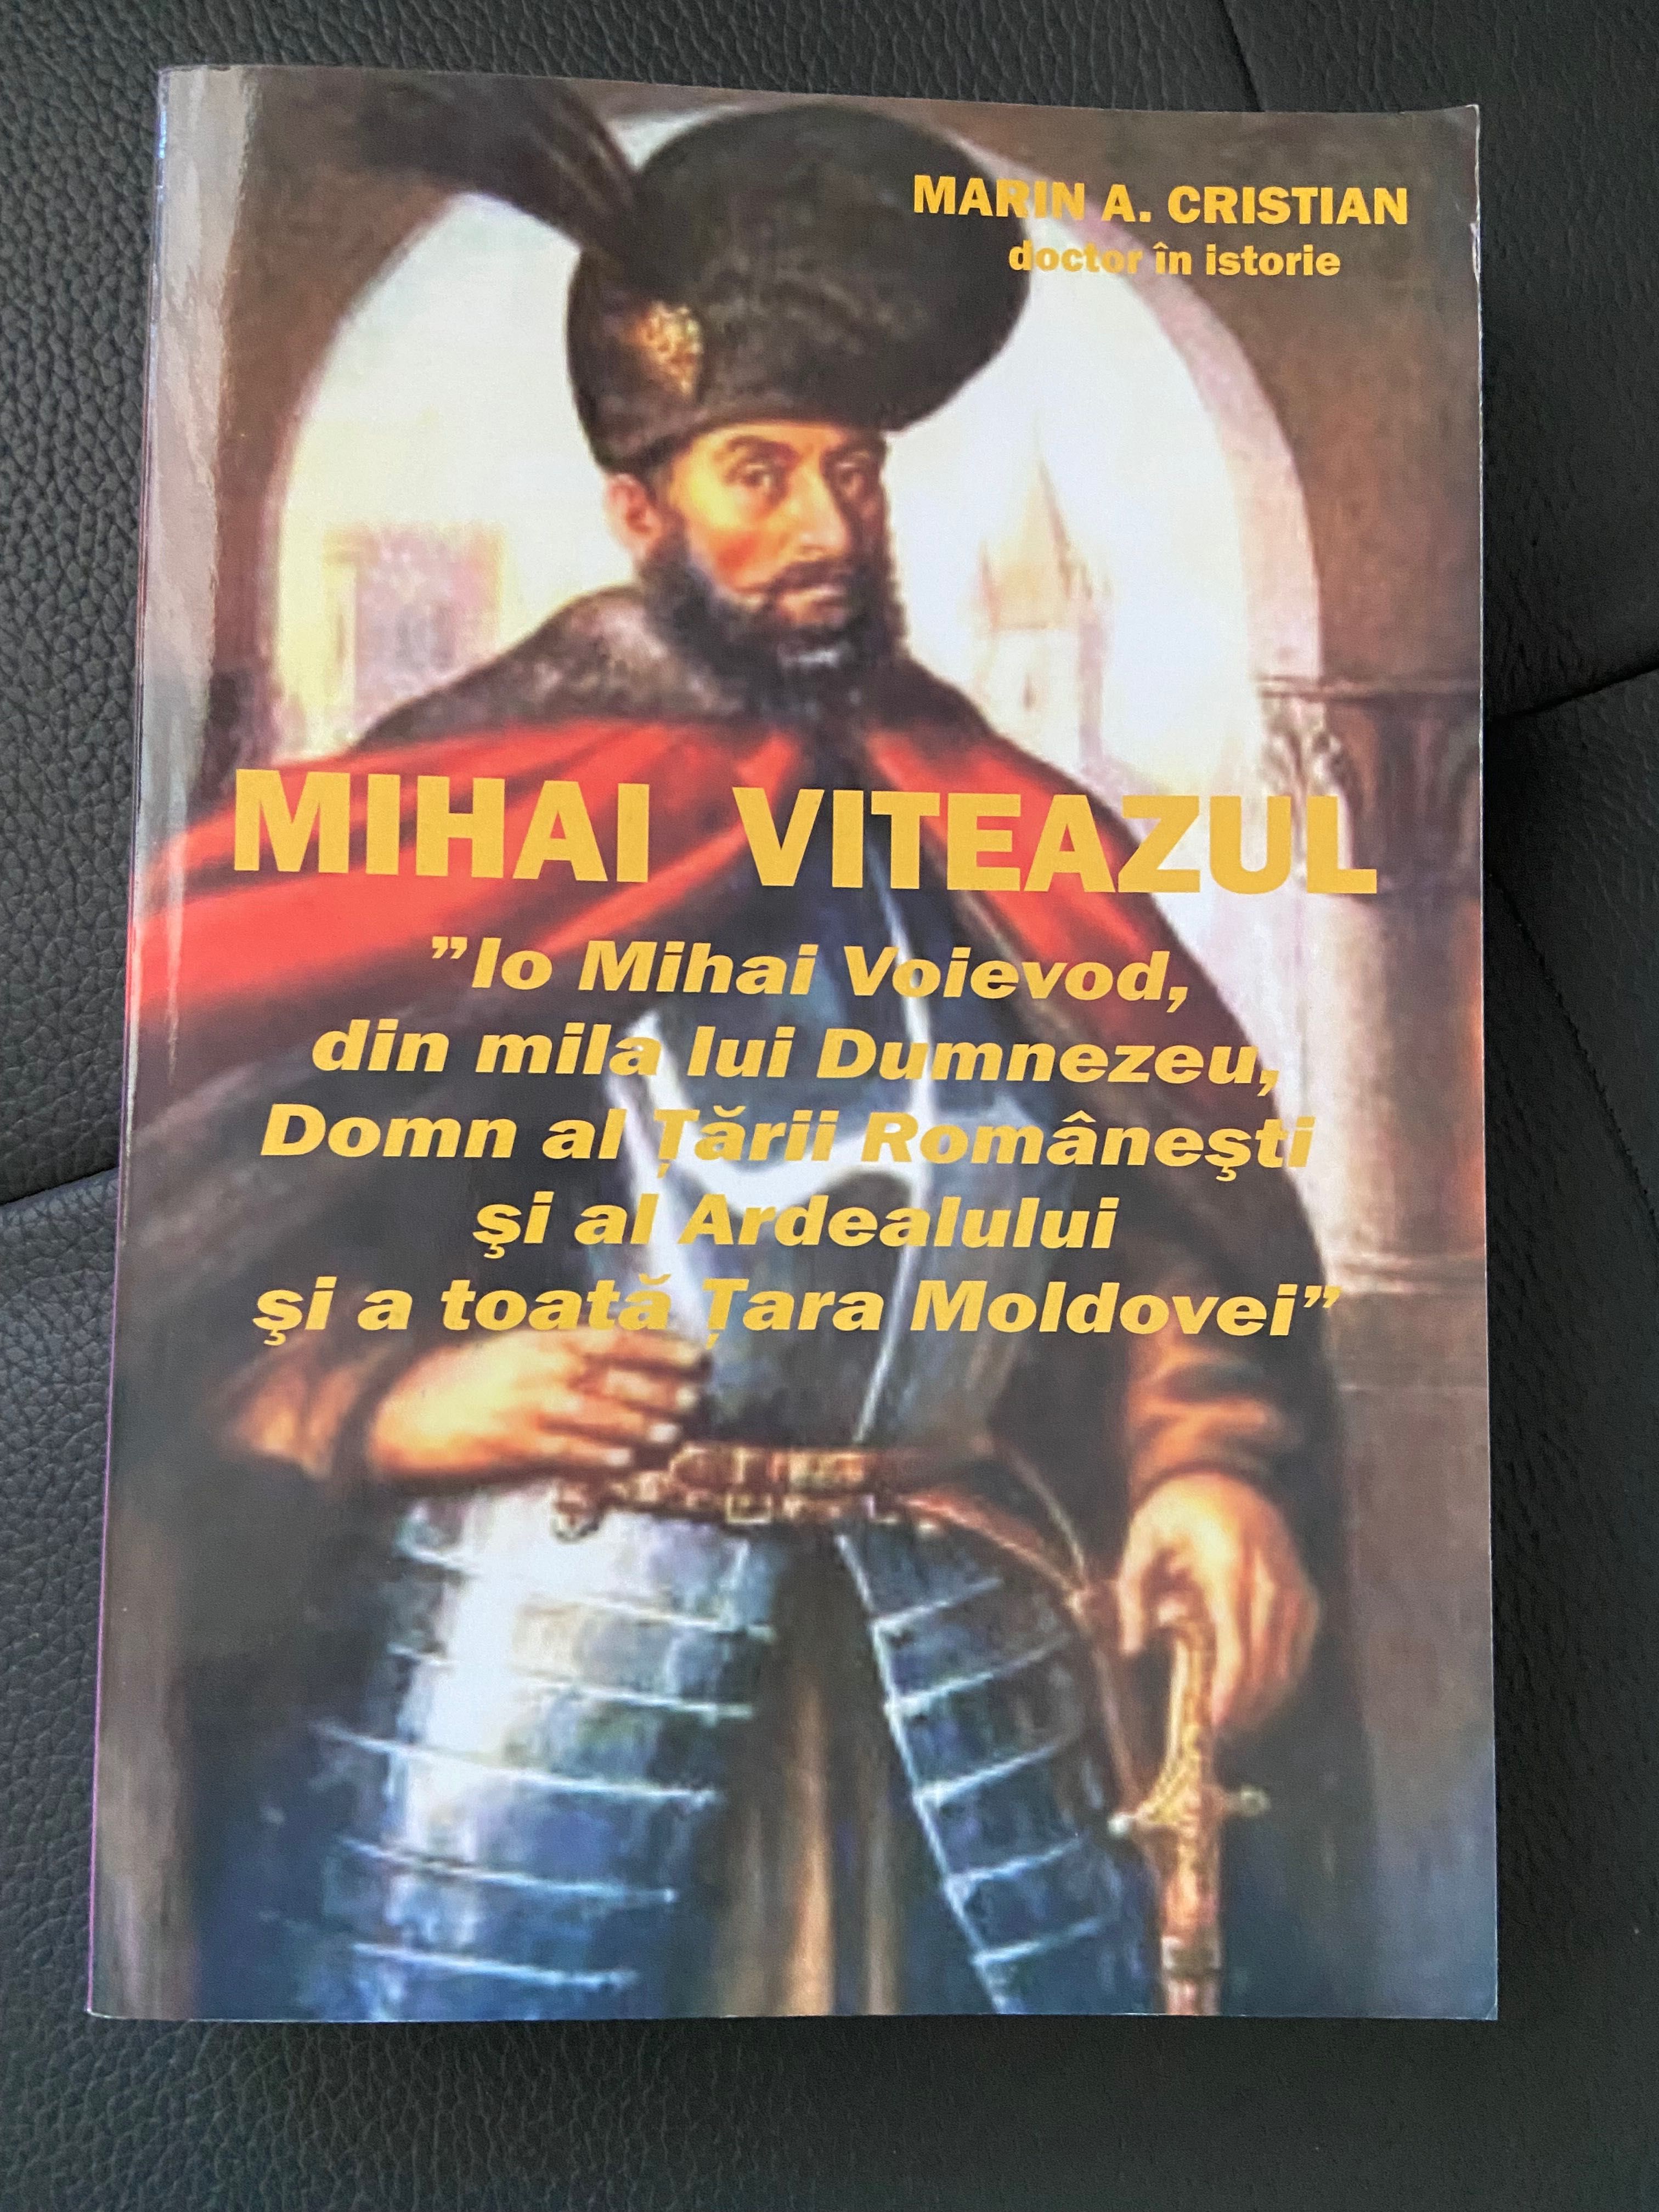 Cărți istorie”Ungurii despre români” și “Mihai Viteazul”